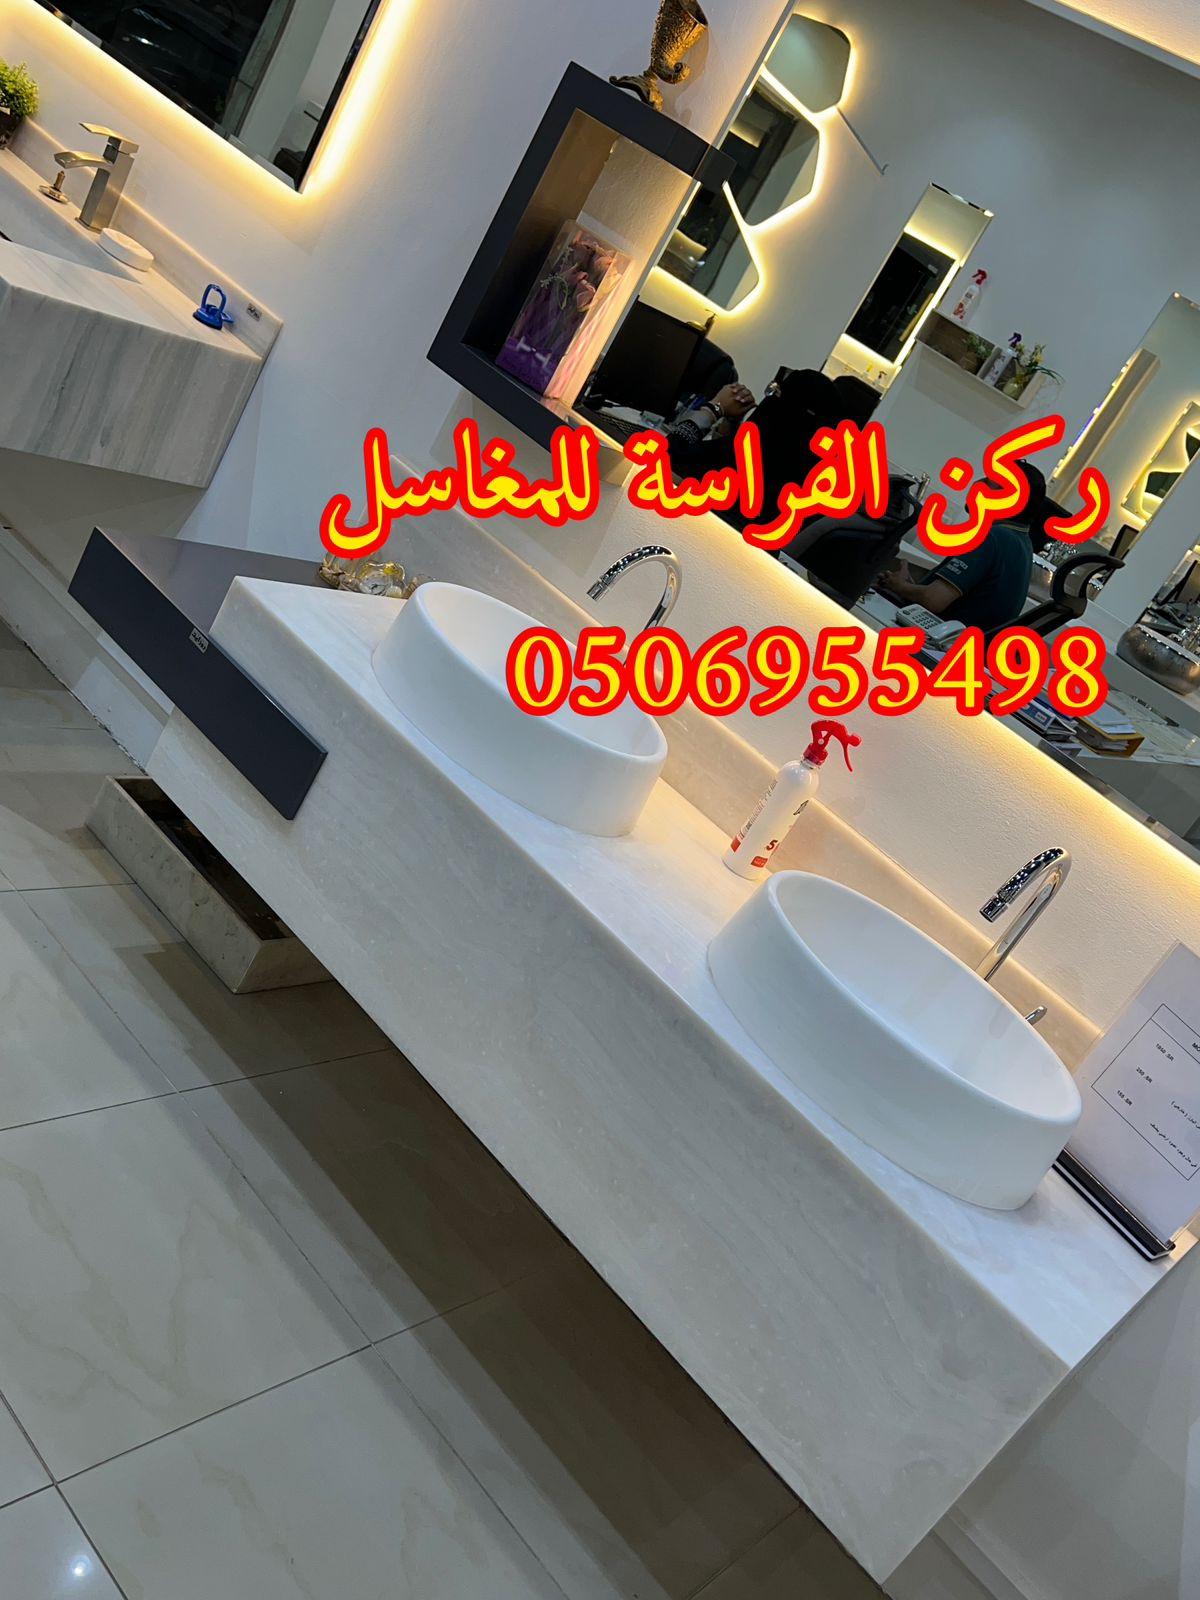 الرياض - اشكال مغاسل رخام حديثة في الرياض,0506955498 417722765